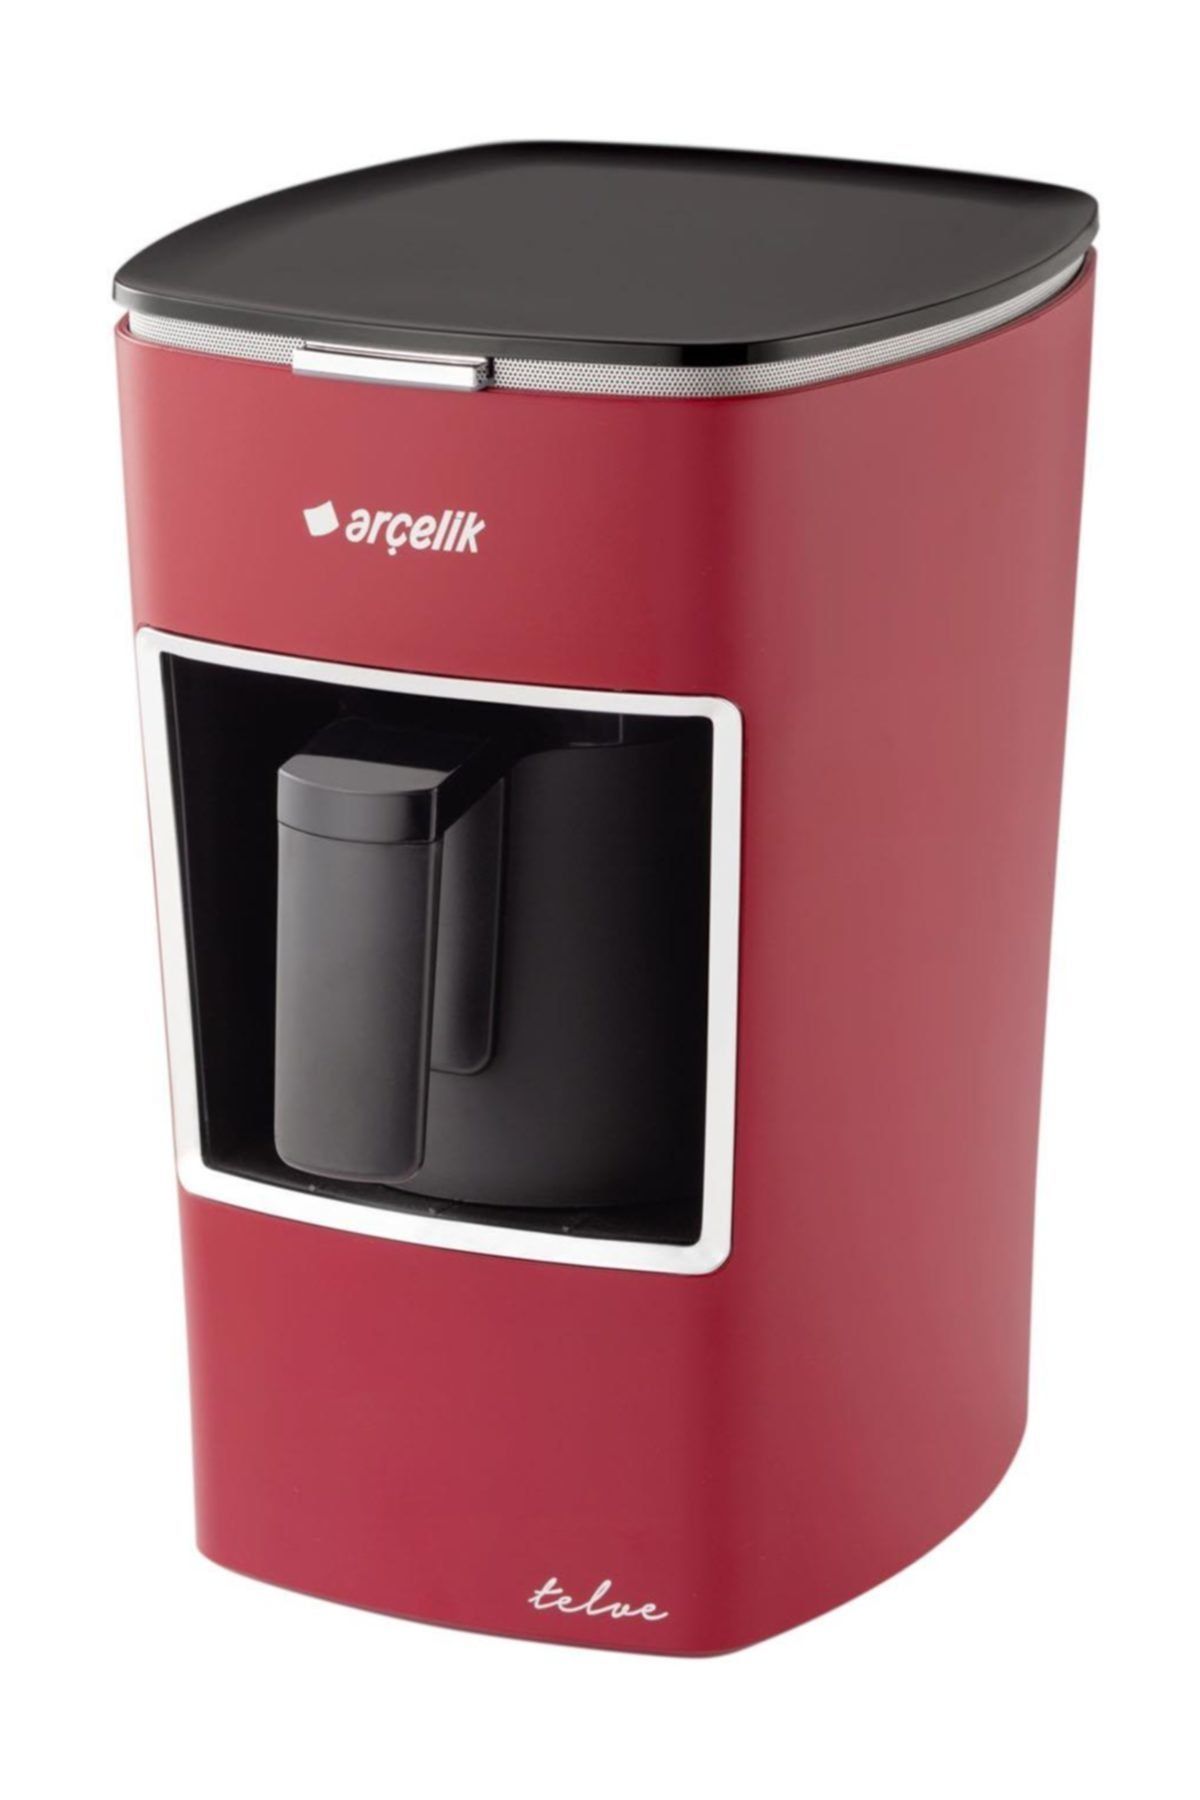 Arçelik K 3300  Mini Tevle Kahve Makinası Kırmızı